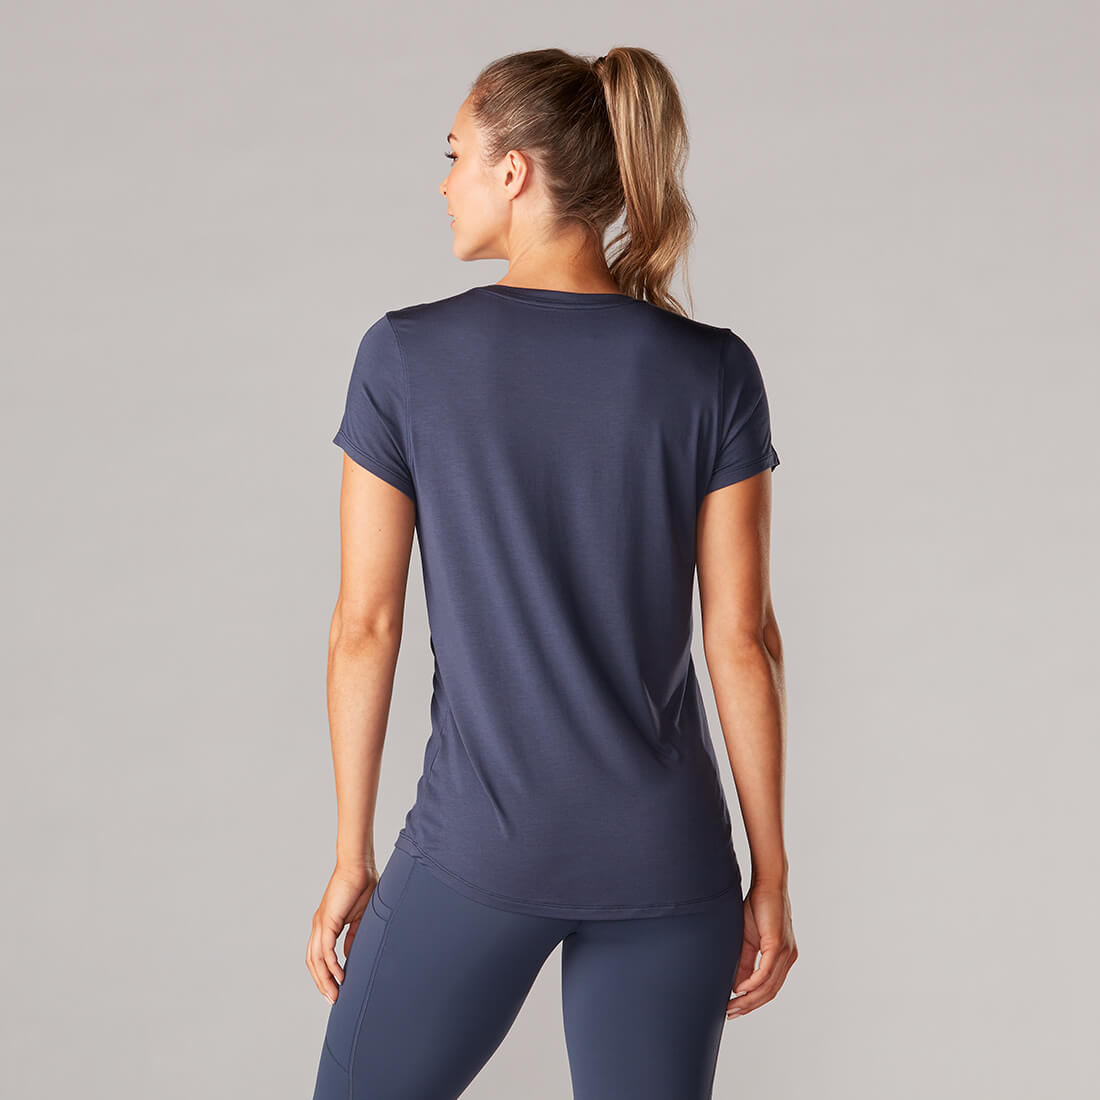 landelijk zitten kalf Sportshirt voor dames kopen? Shop nu online bij Yoga-Pilatesshop.nl!